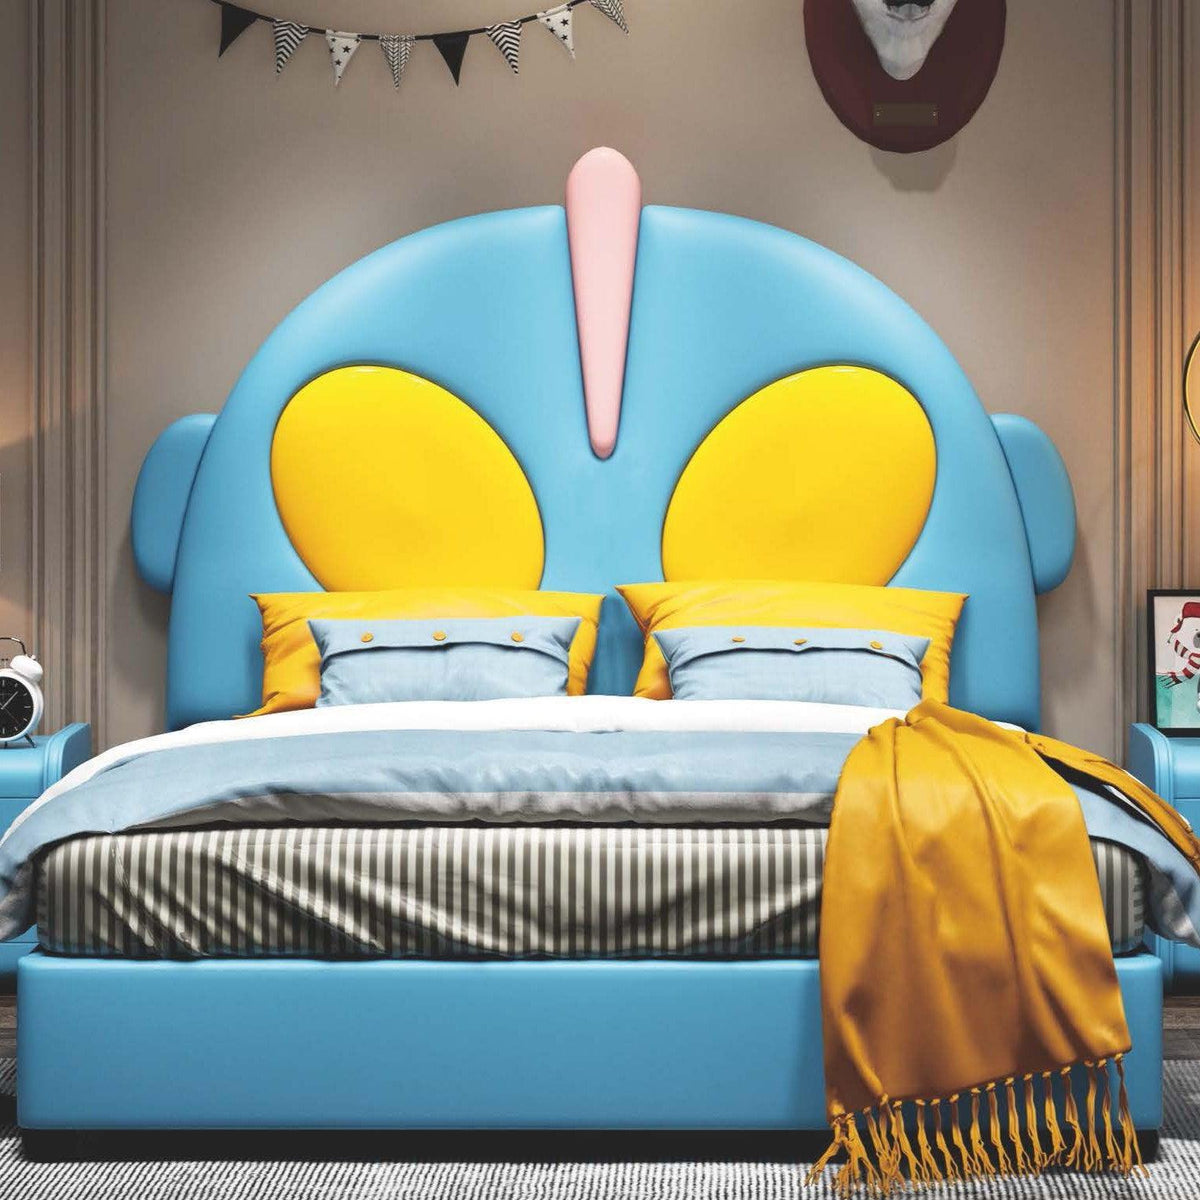 HB Rooms Ultraman Bed (#850) - Kids Haven